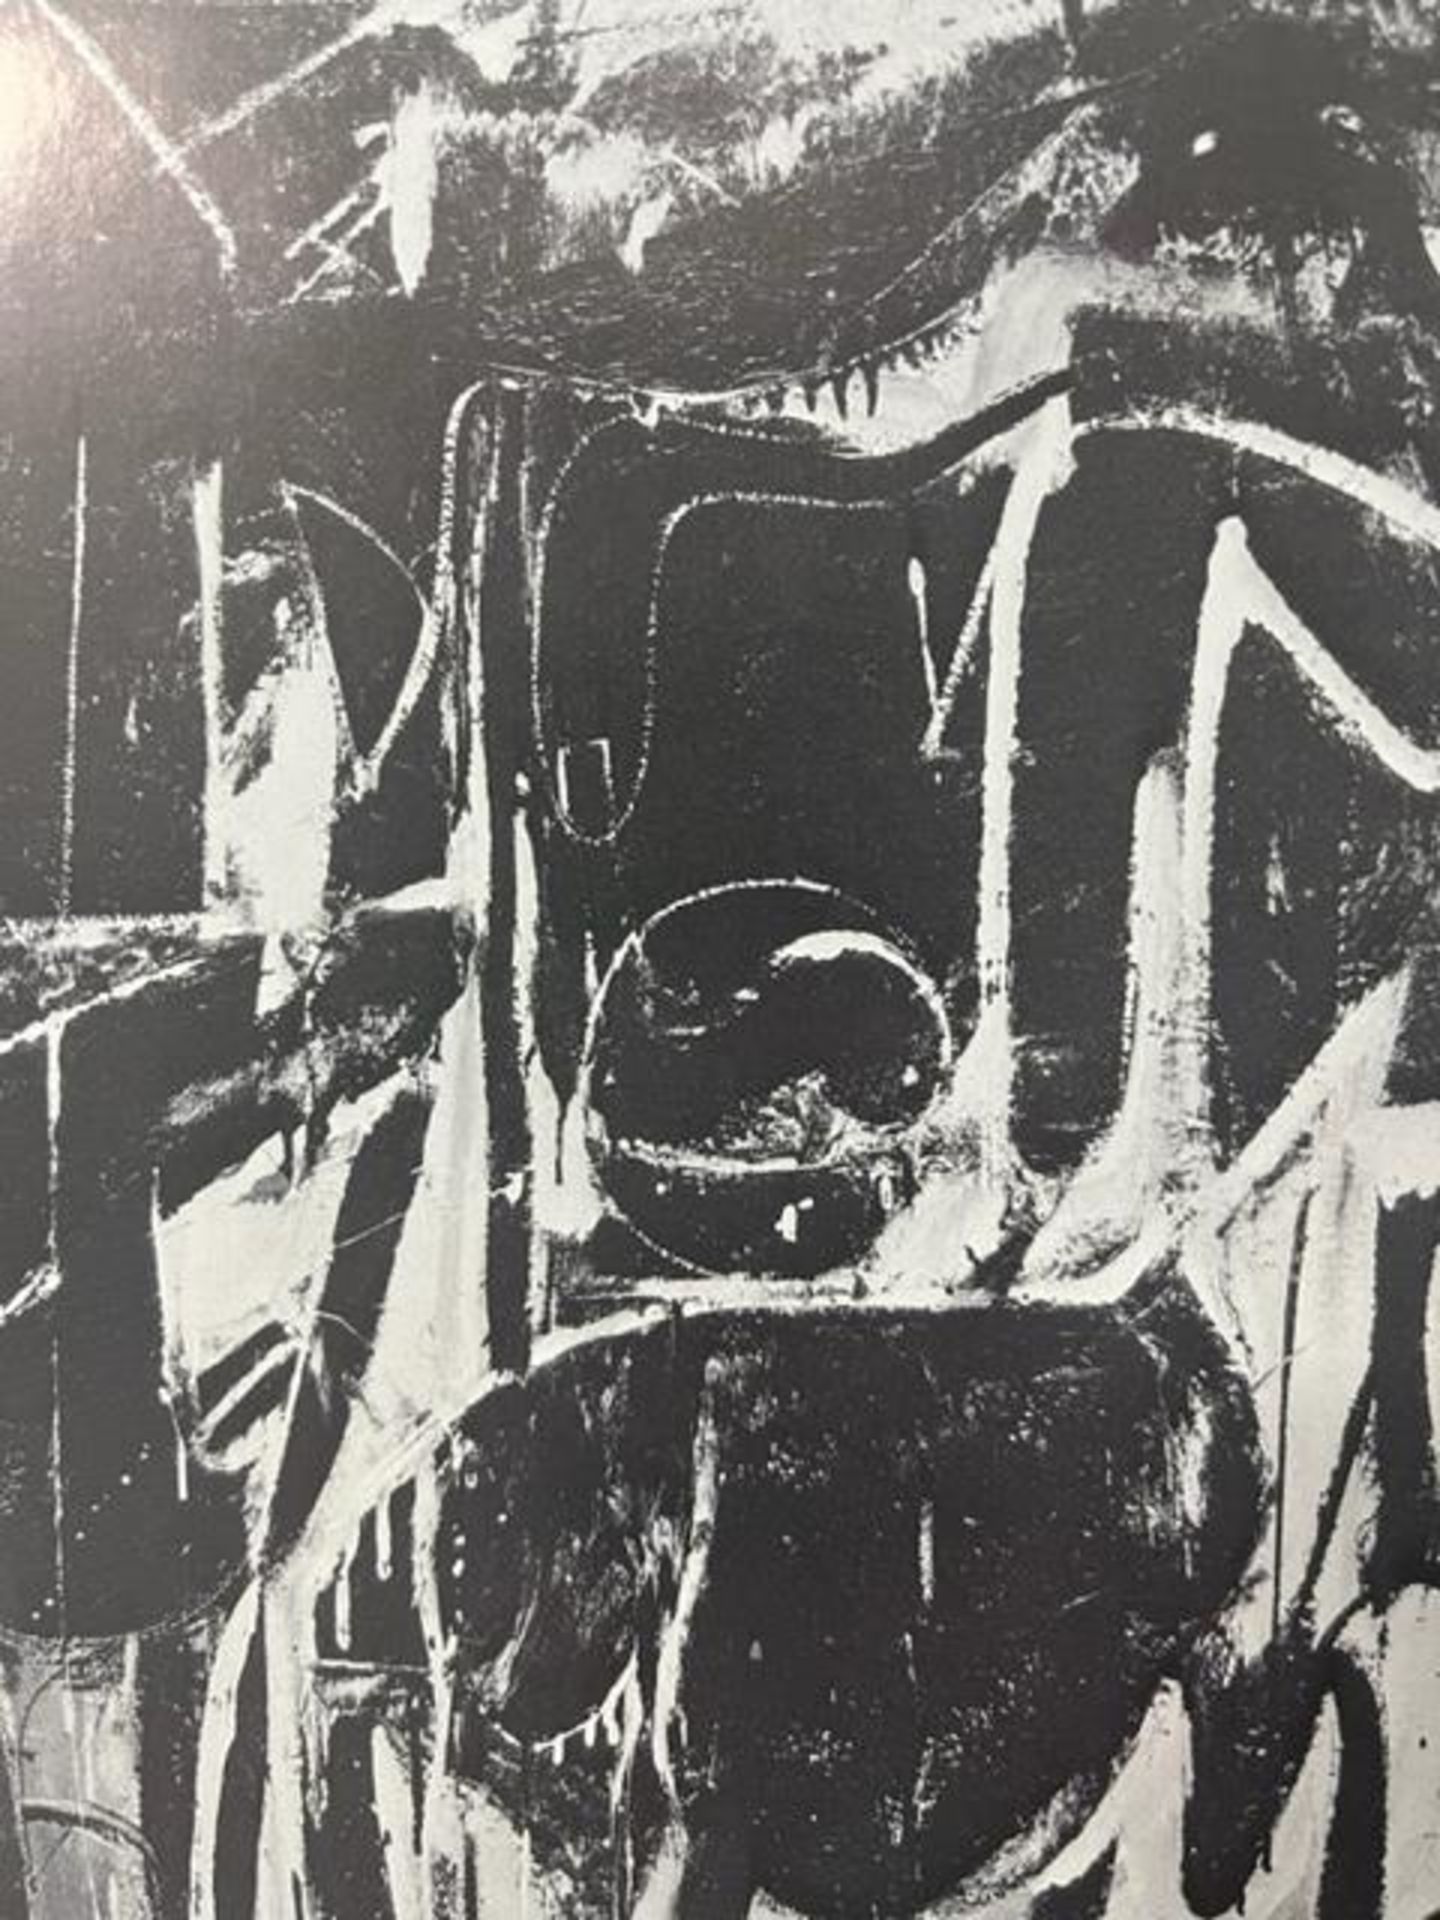 Willem de Kooning "Black Friday" Print. - Bild 2 aus 6